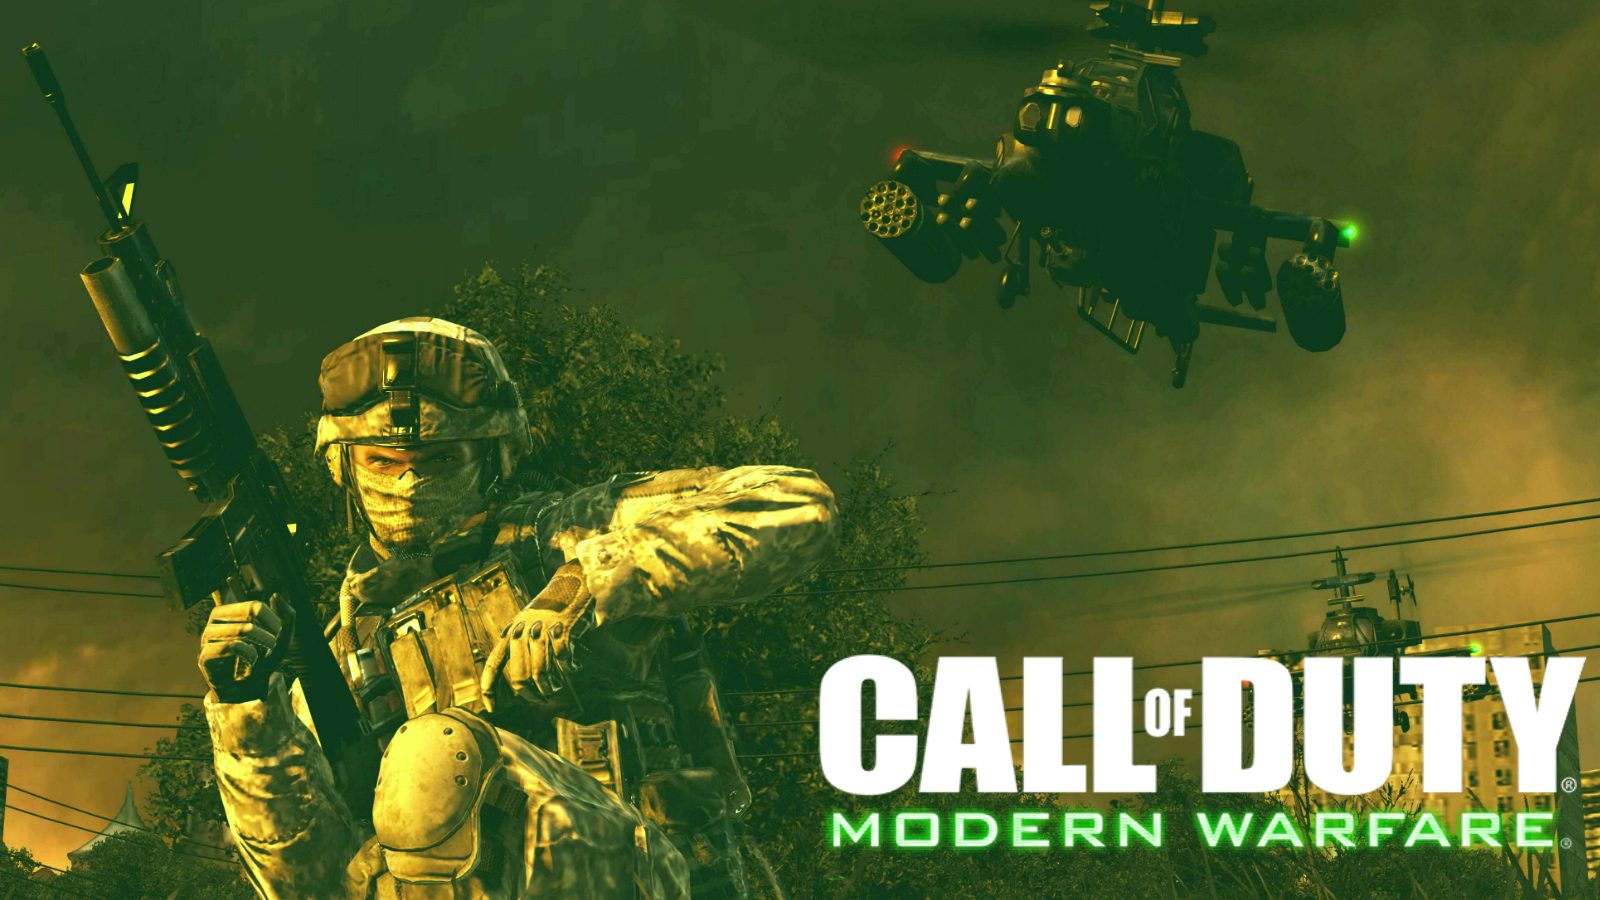 Rumors of Call of Duty: Infinite Warfare 2 shut down – is MW4 next